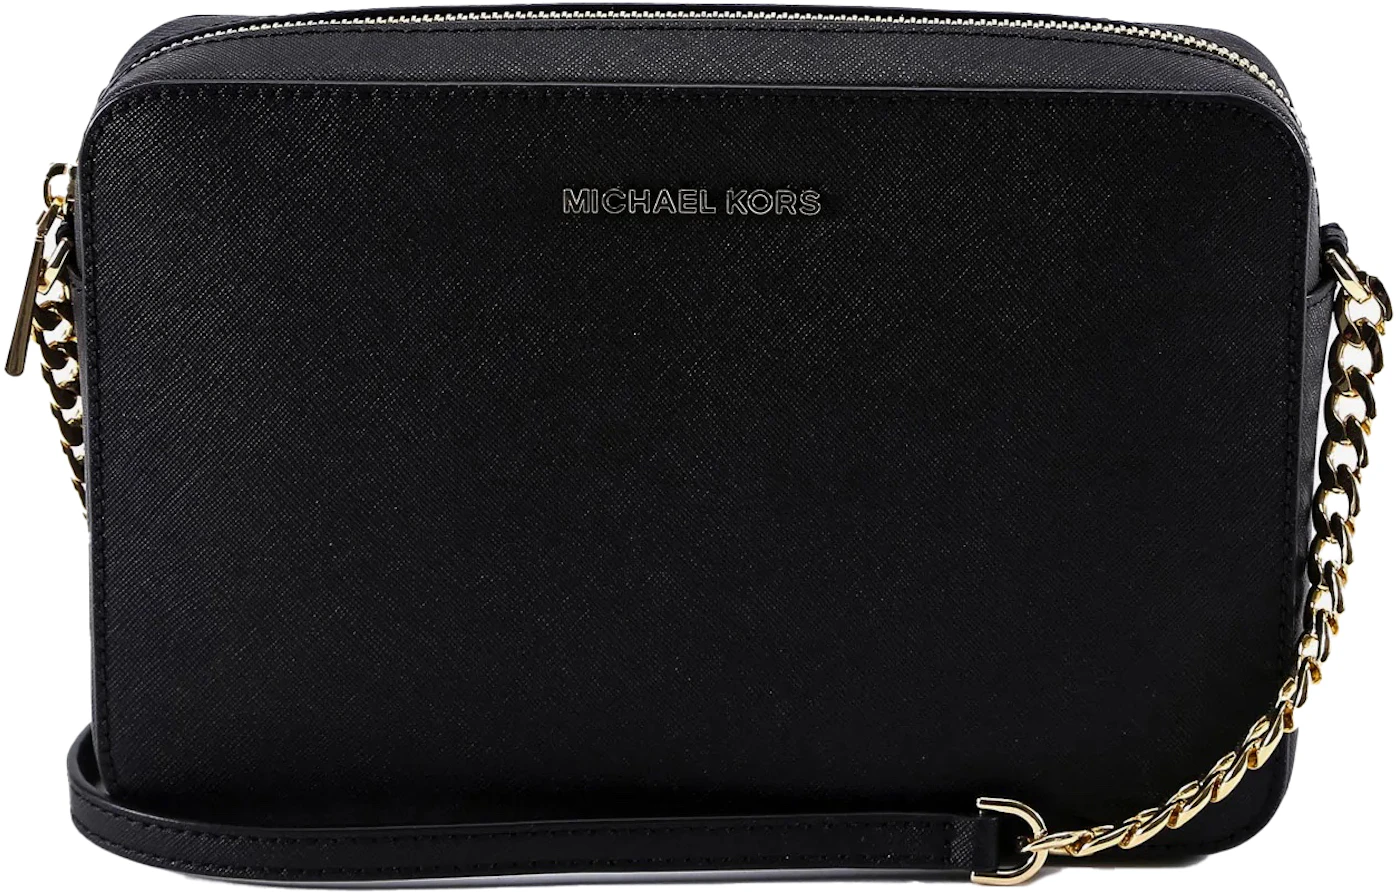 Michael Kors Outlet: Michael bag in leather - Black  Michael Kors shoulder  bag 30S3GP1H3L online at